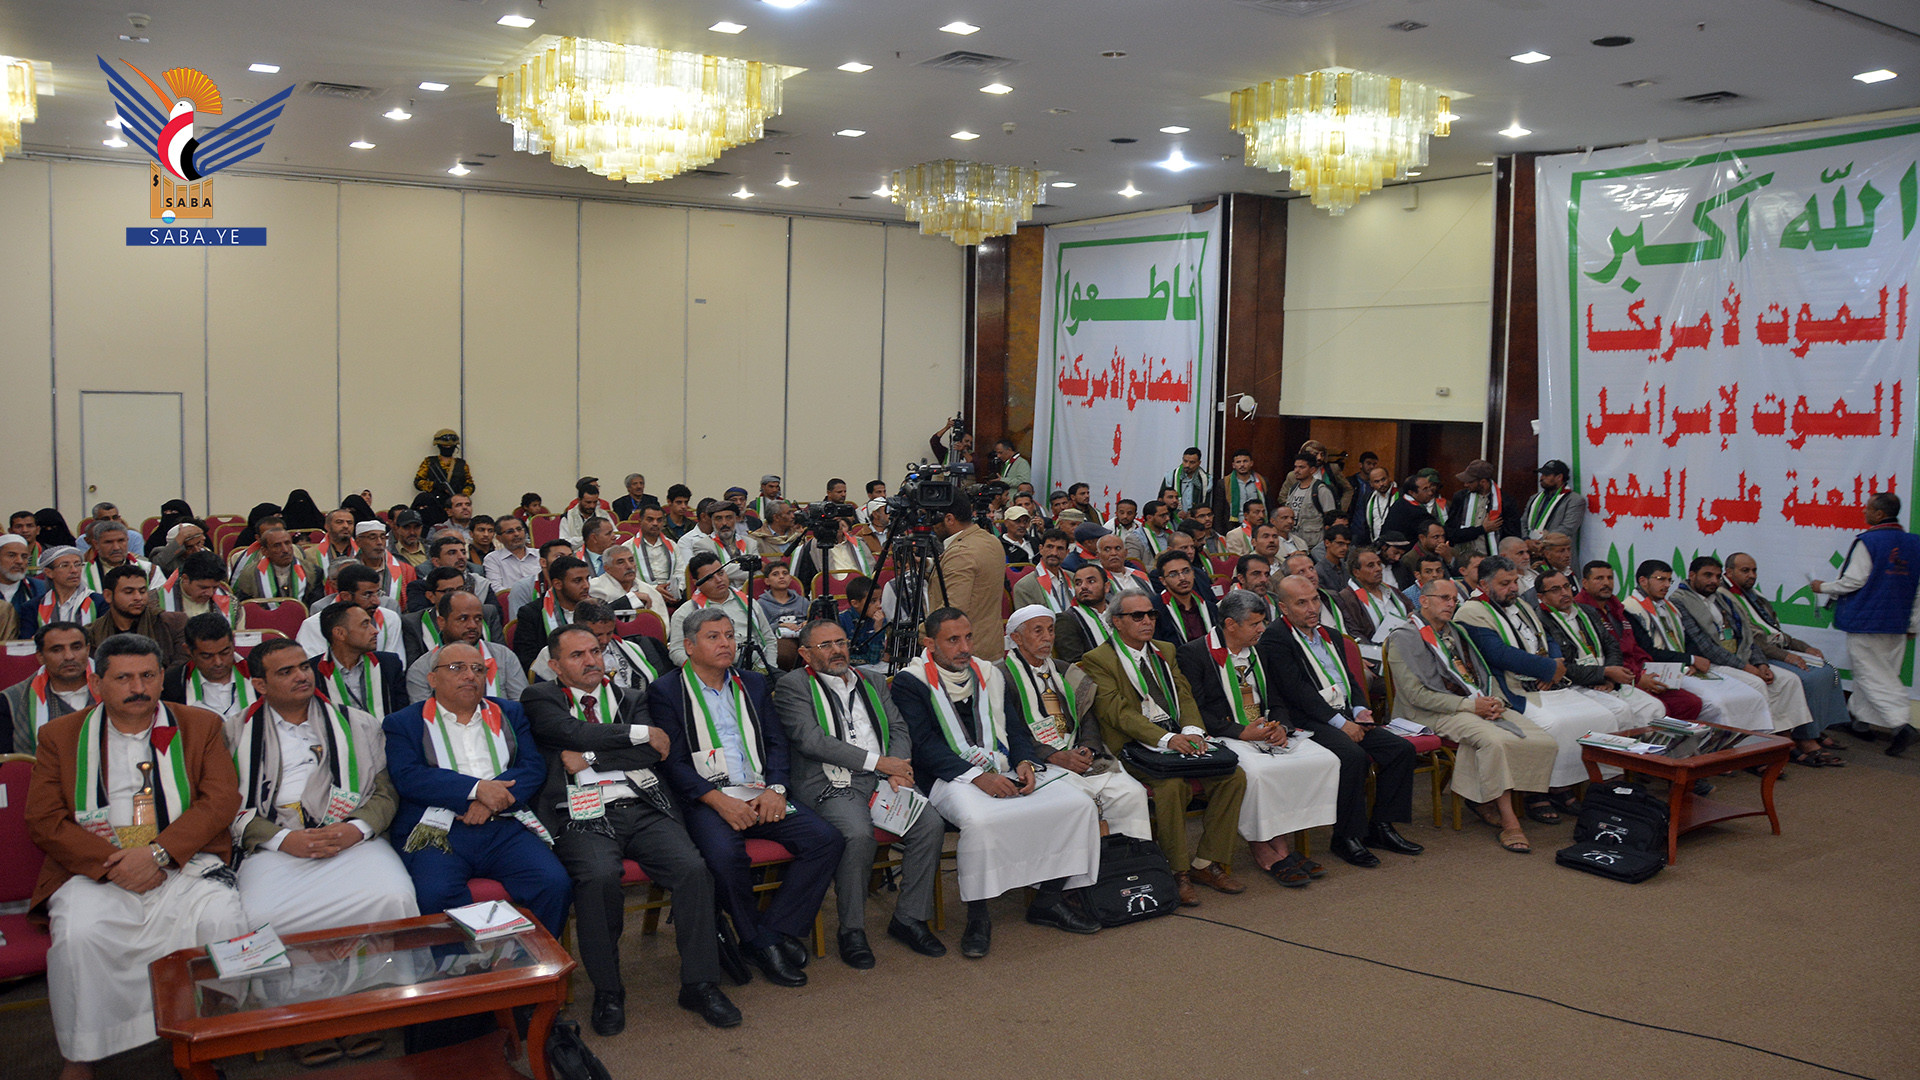 تواصل أعمال المؤتمر العلمي" فلسطين، قضية الأمة المركزية" بالعاصمة صنعاء